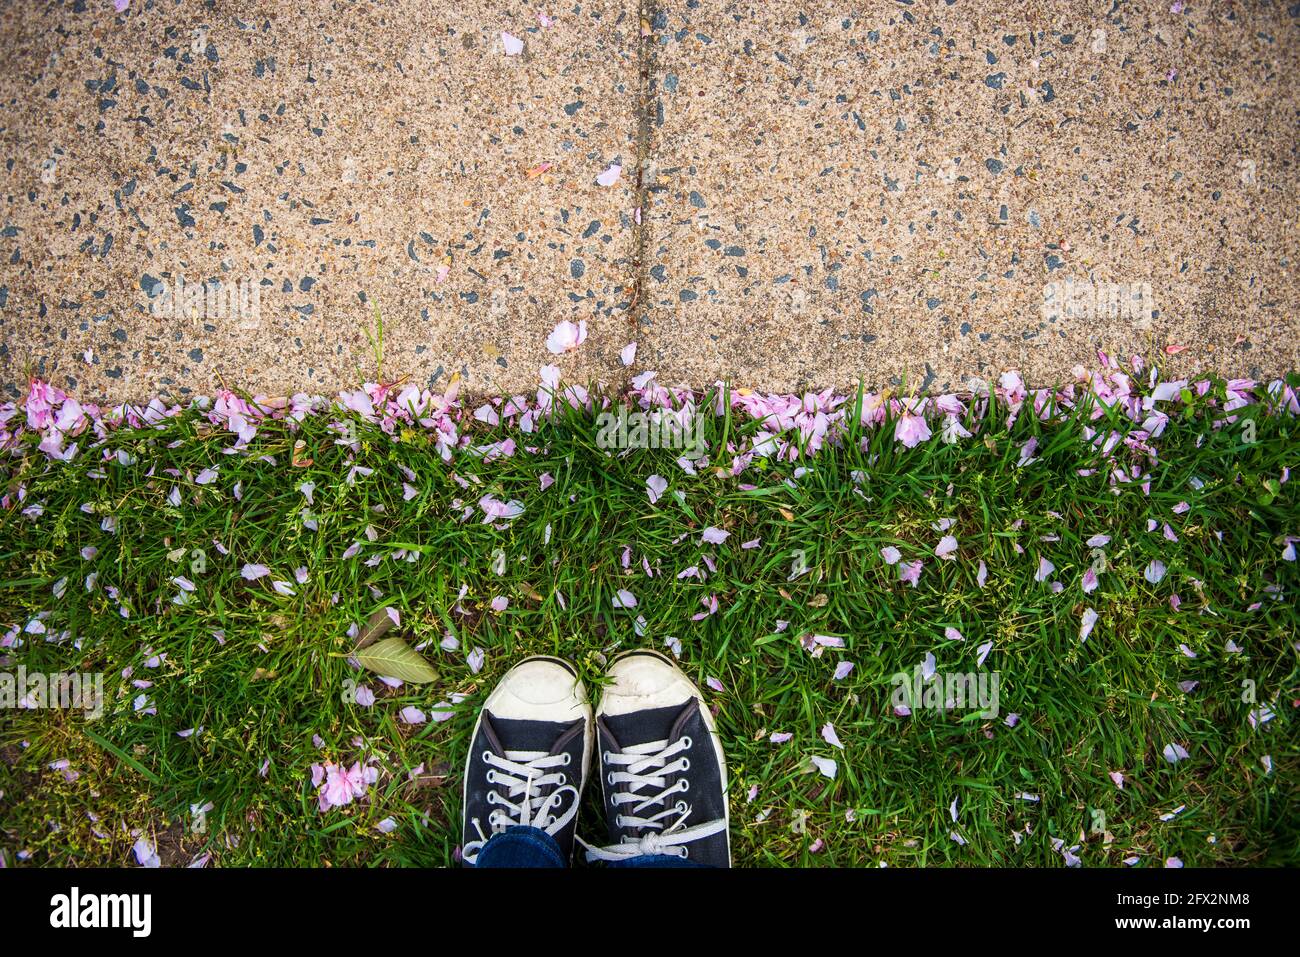 Die Beine und Füße einer jungen Frau stehen in der Nähe des Bürgerwegs im Gras mit rosa Kirschblütenblättern. Leerer Platz für positiven Text, Zitate oder Sprüche. Draufsicht Stockfoto